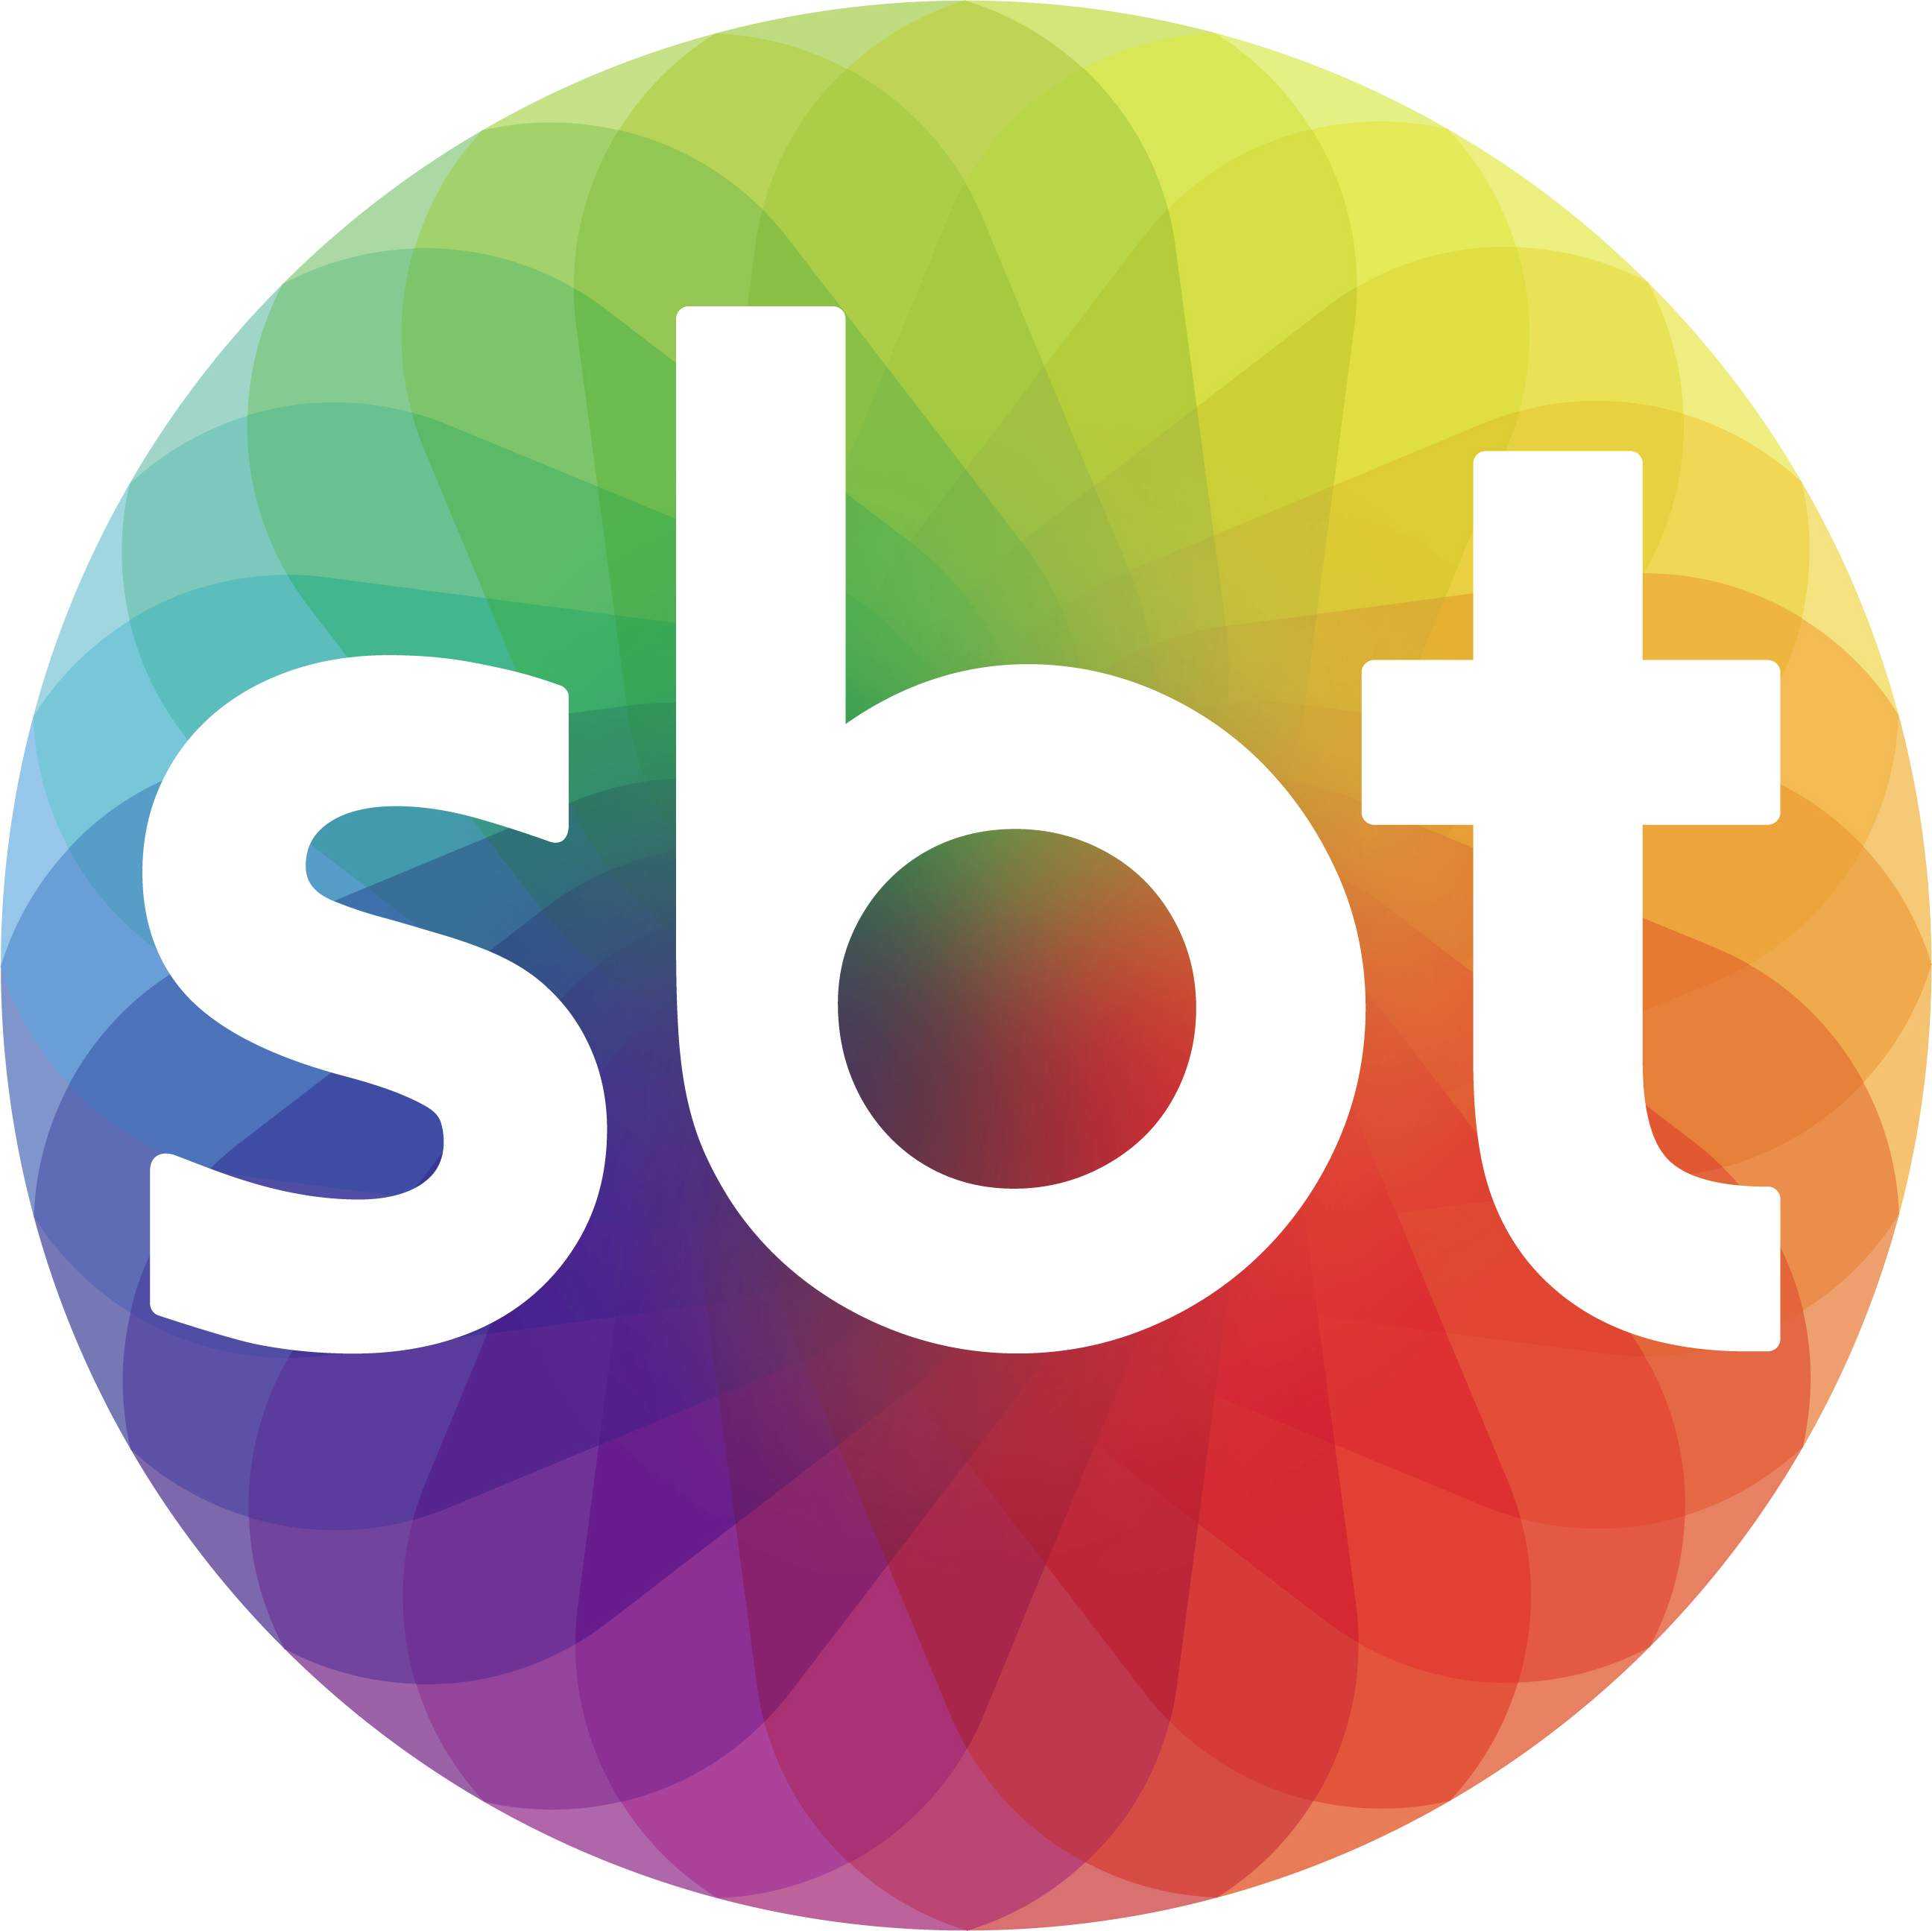 Empresários do BNI Sorocaba explicam ao SBT – TV Sorocaba como o networking tem ajudado a gerar mais negócios